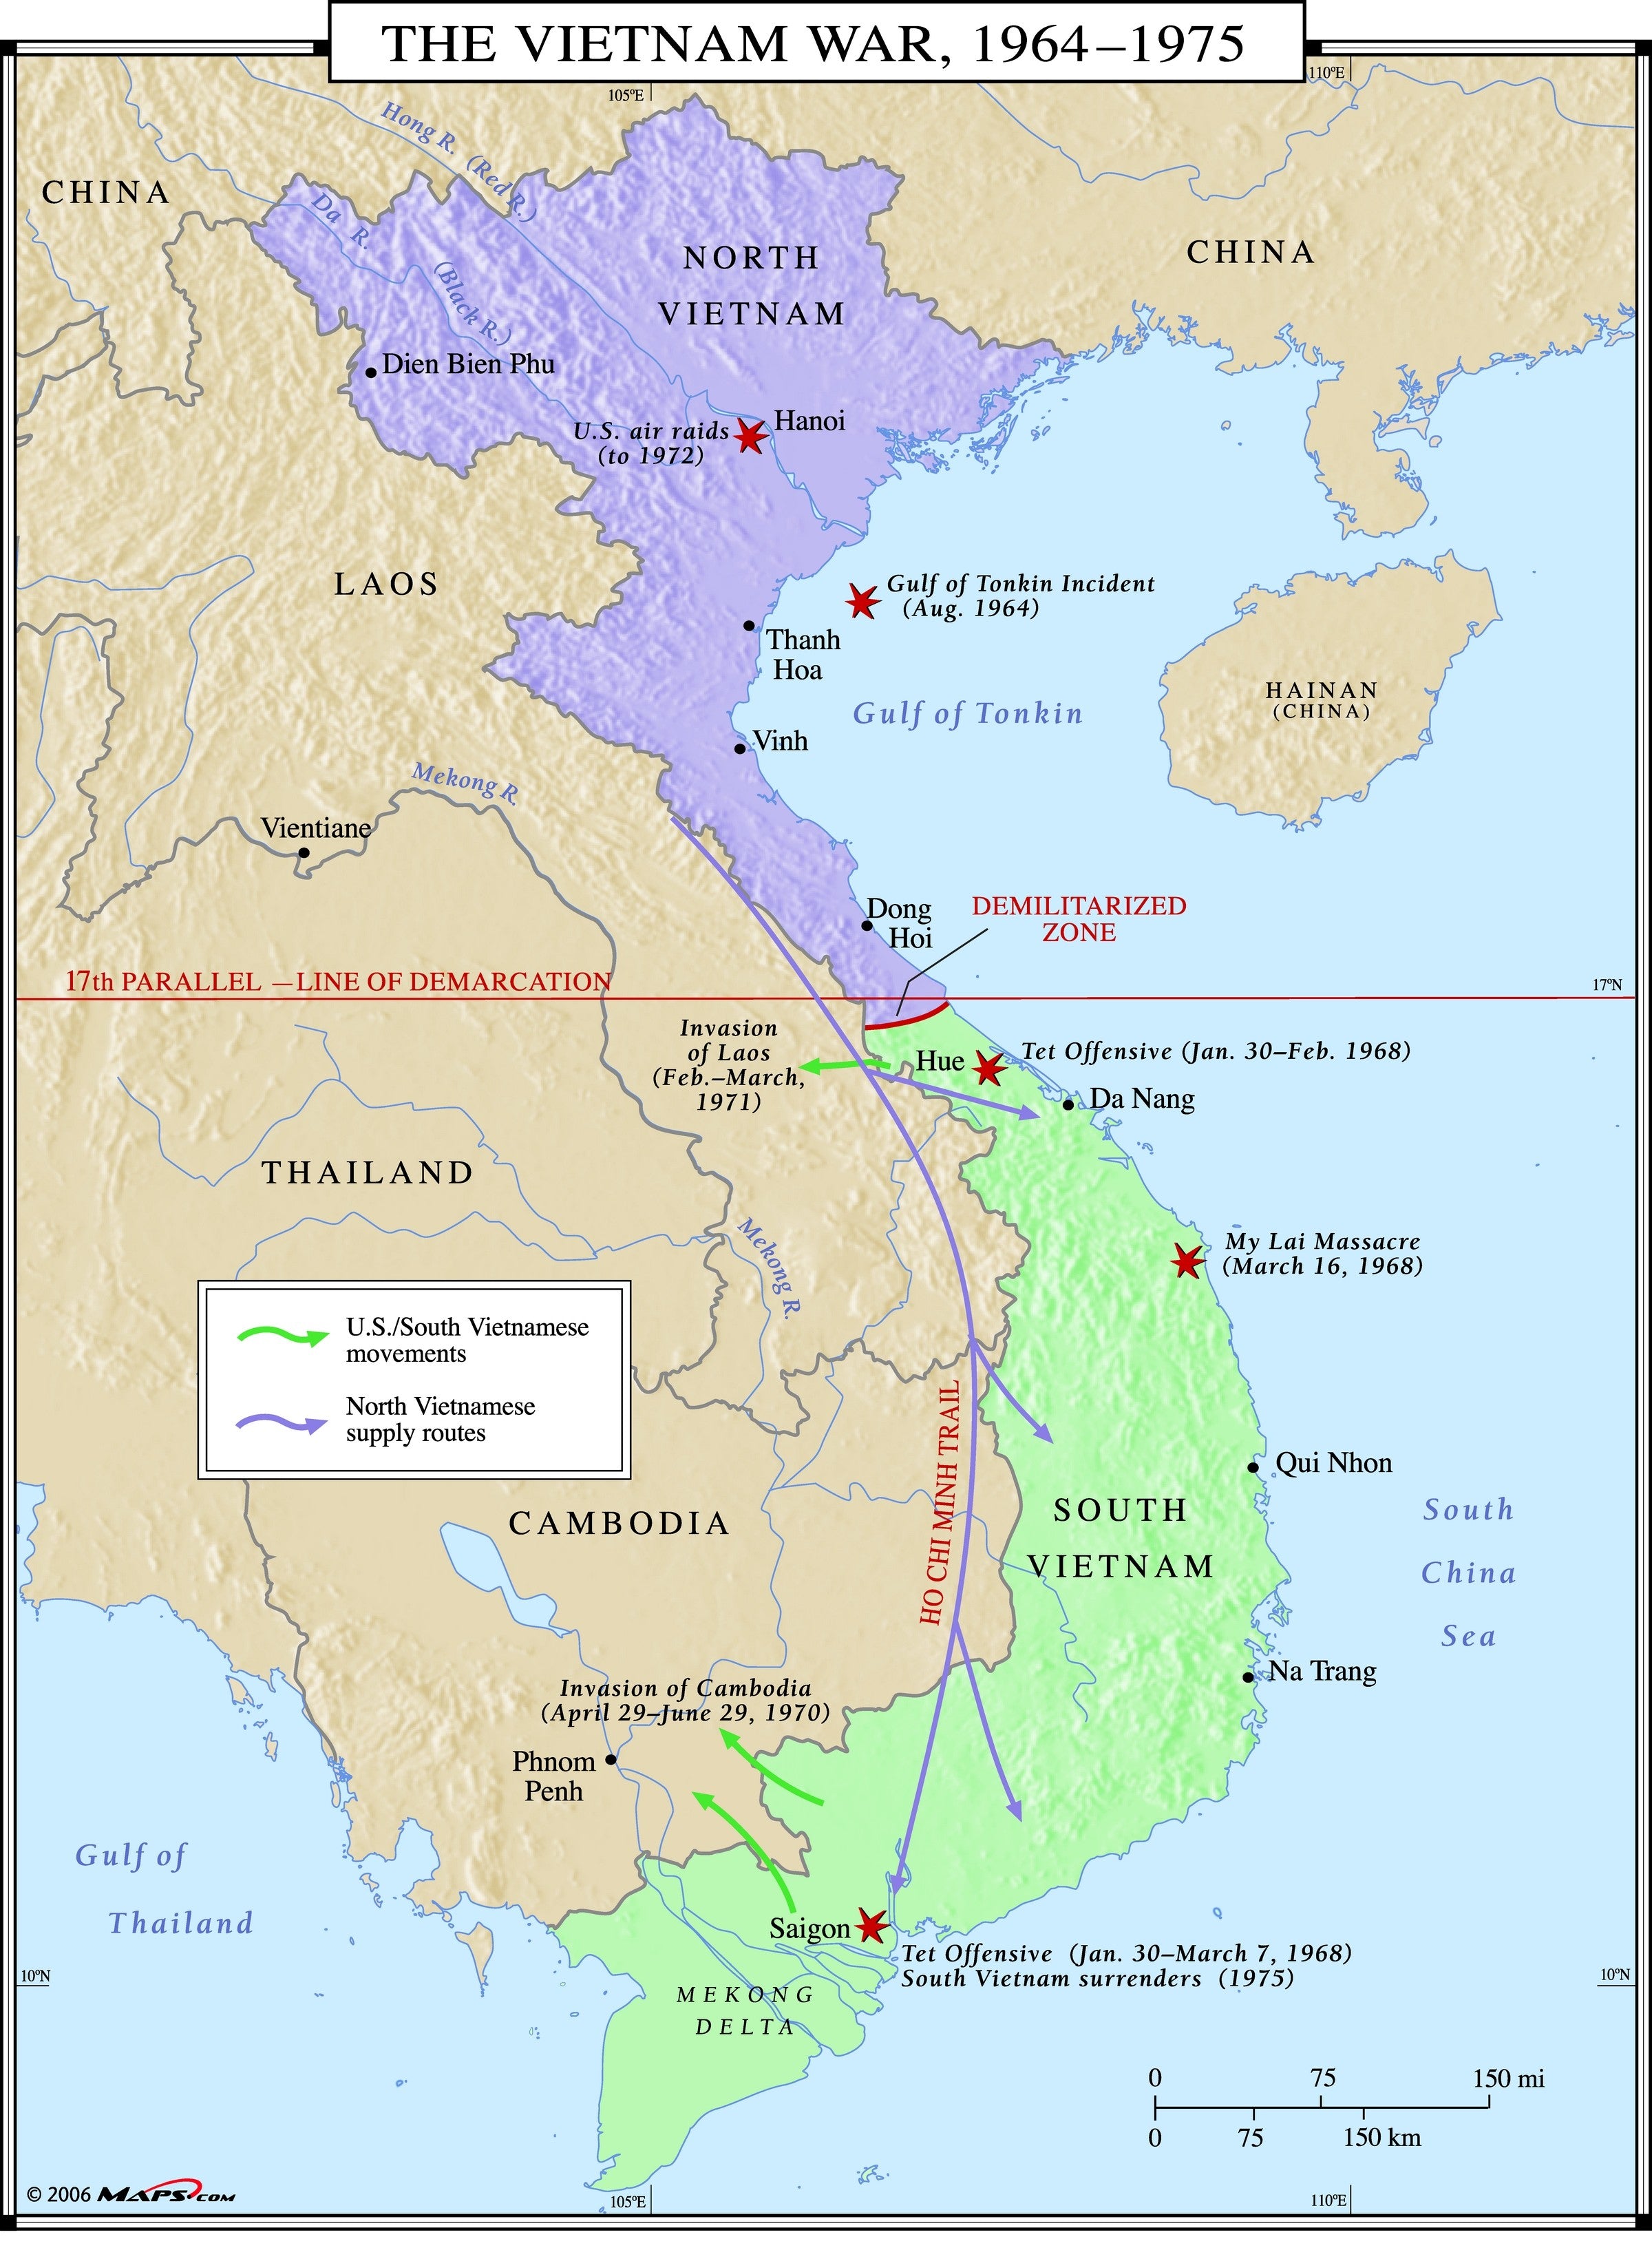 Vietnam War Map | Maps.com.com